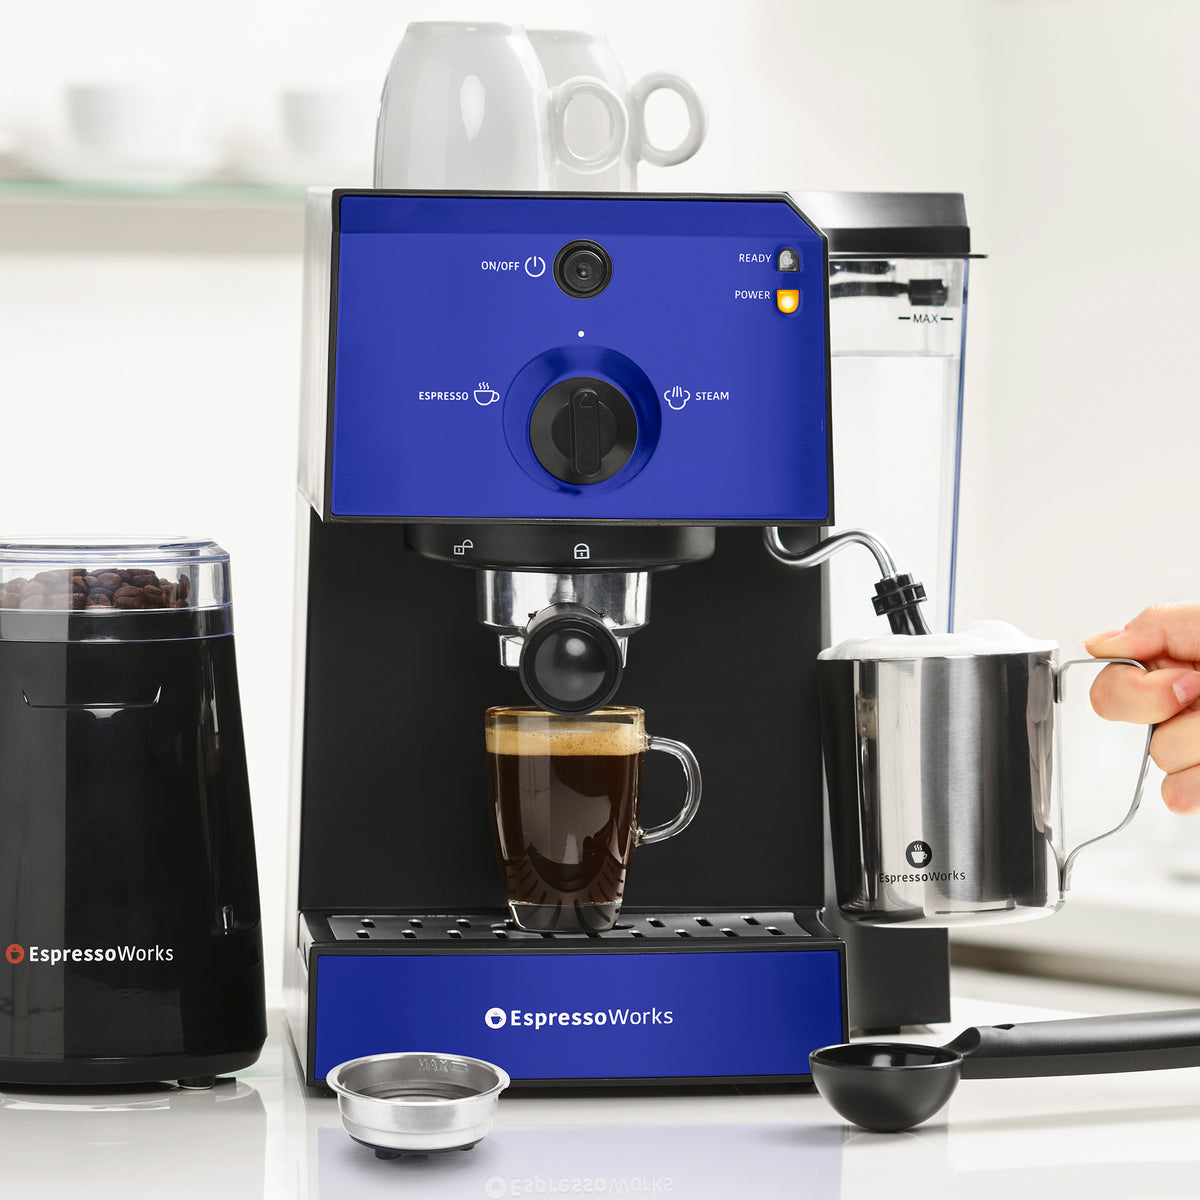 EspressoWorks 7-Piece Espresso Machine Set - Blue